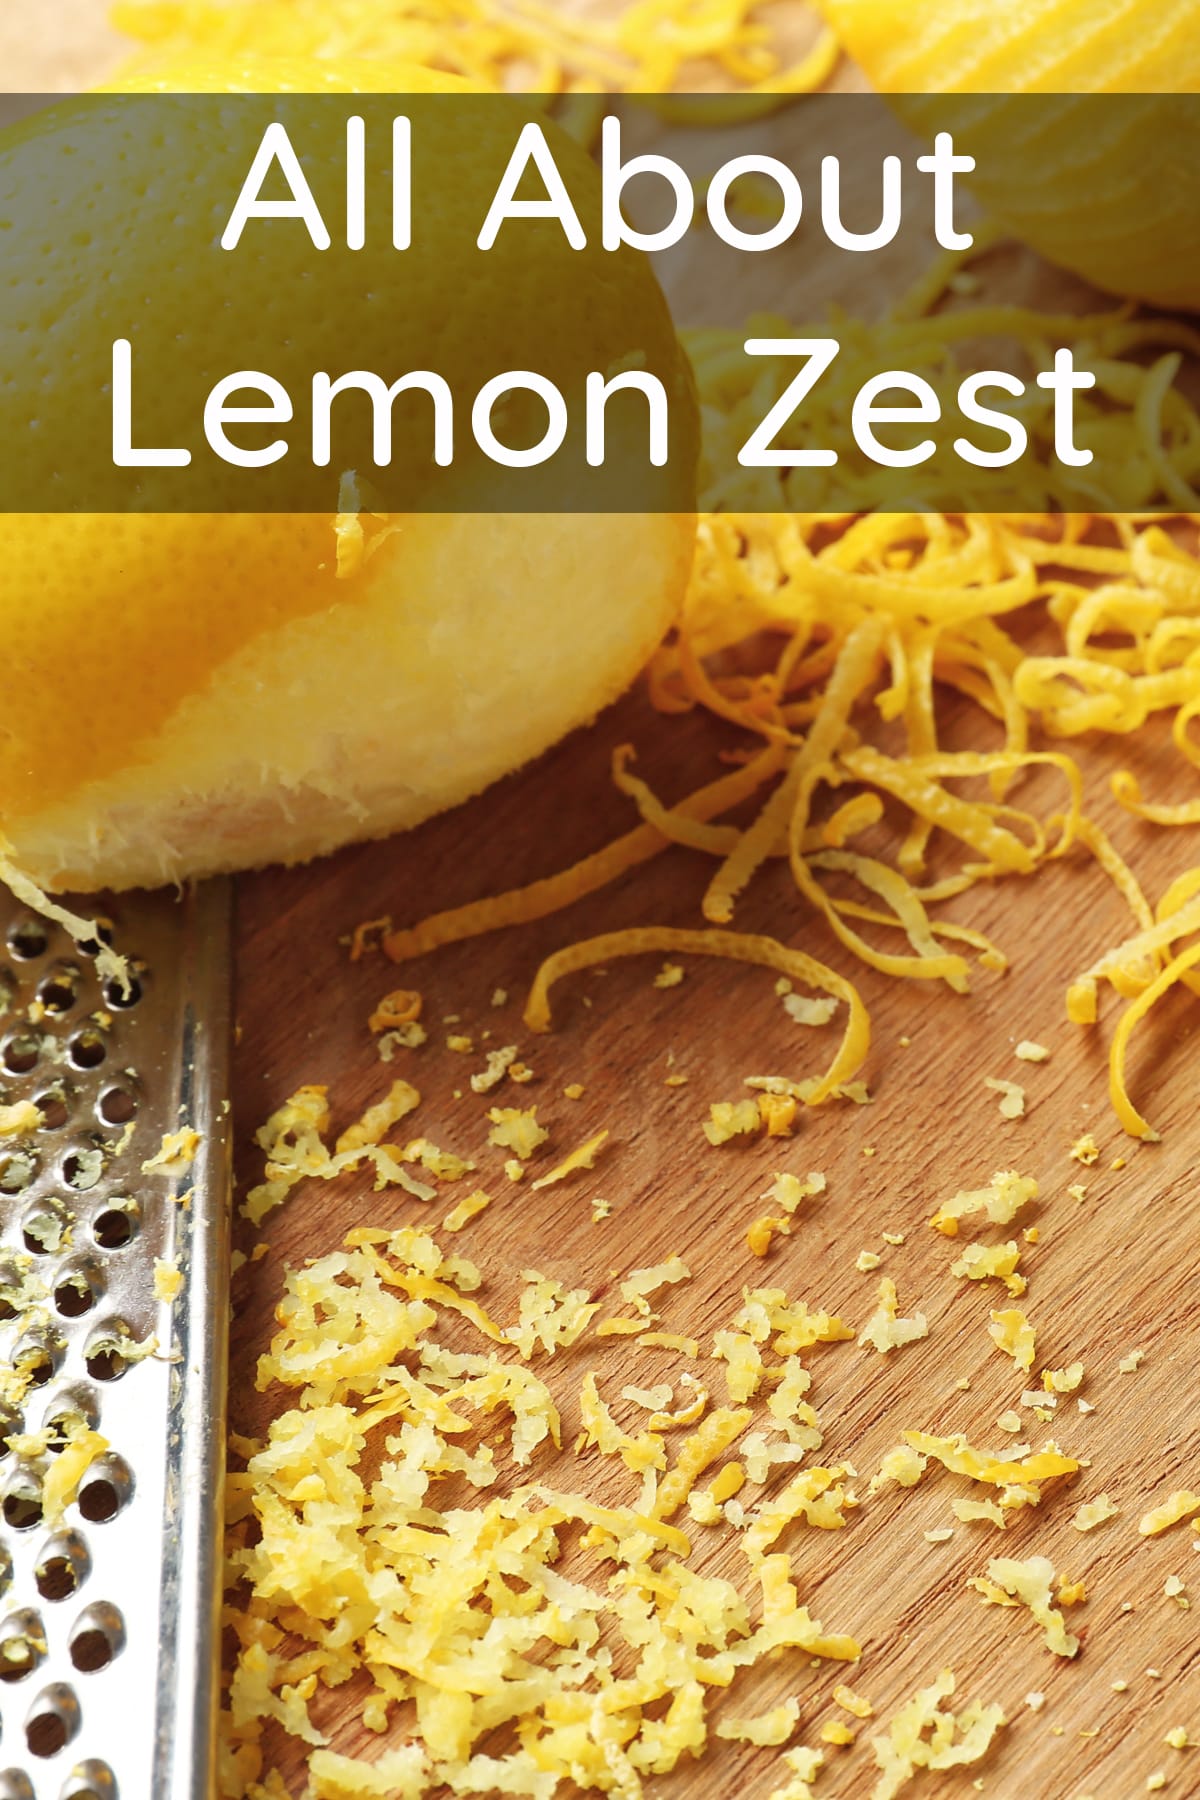 All About Lemon Zest